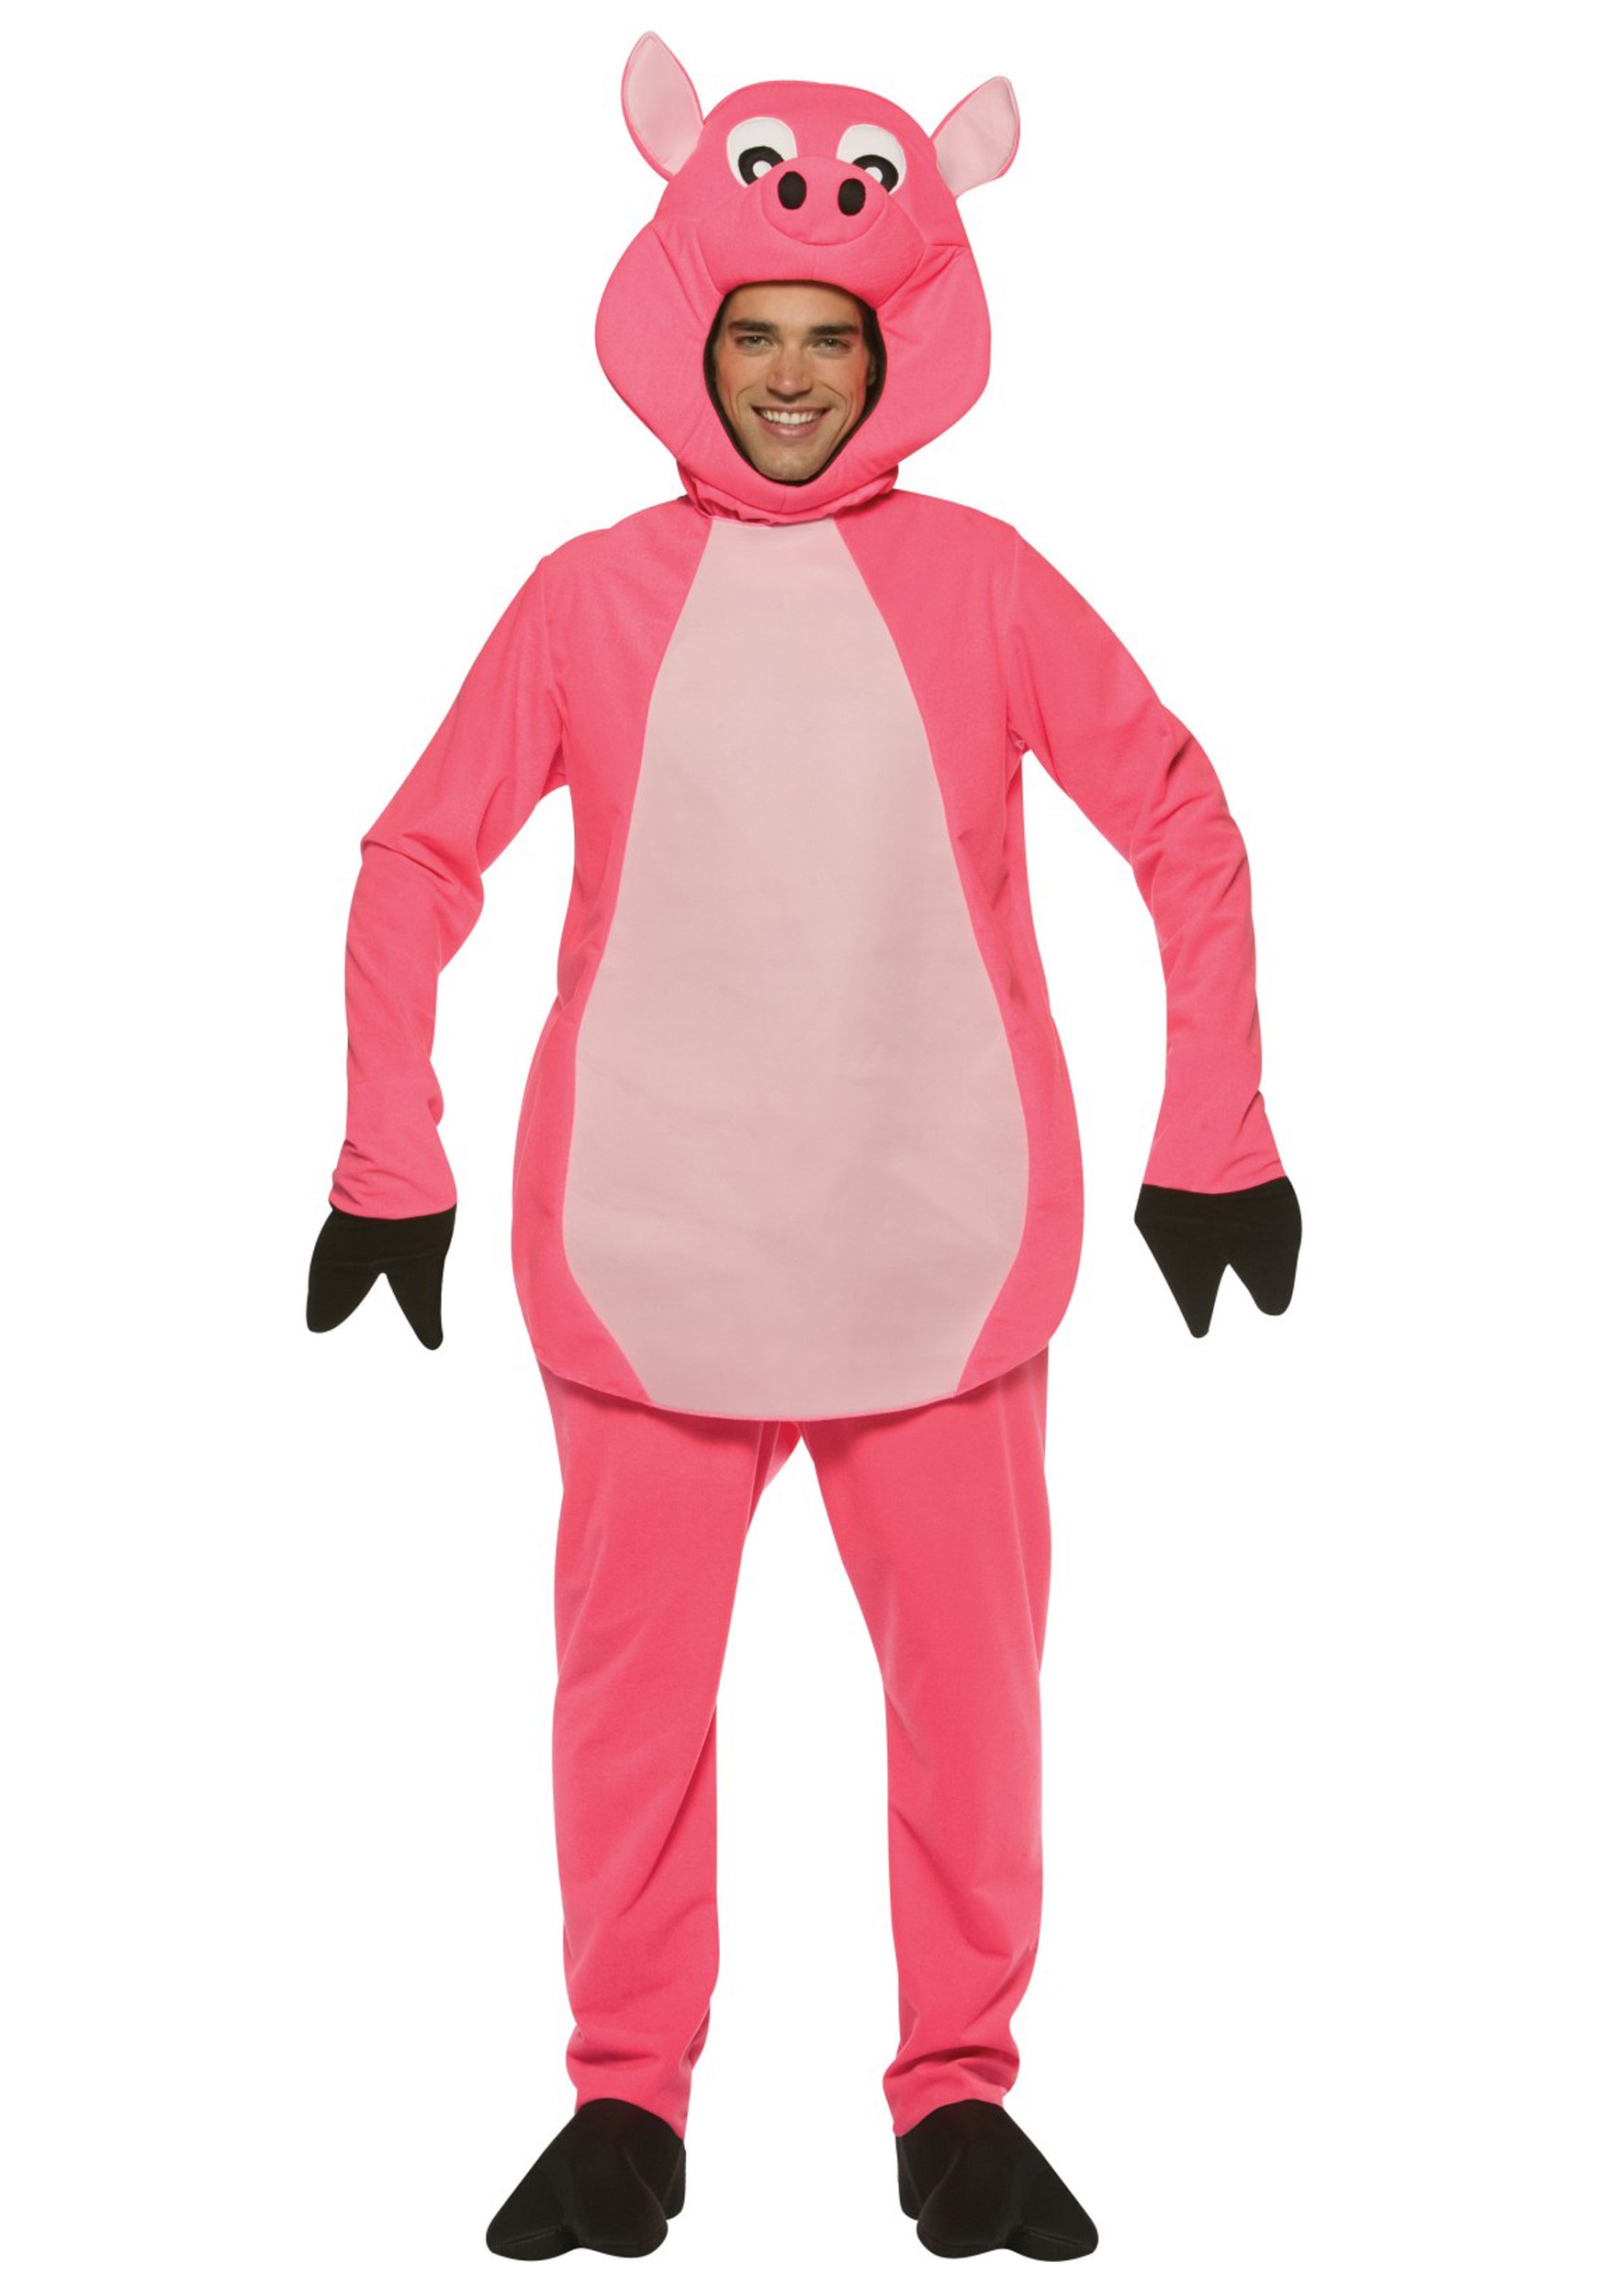 Wee Piggie Fancy Dress Costume